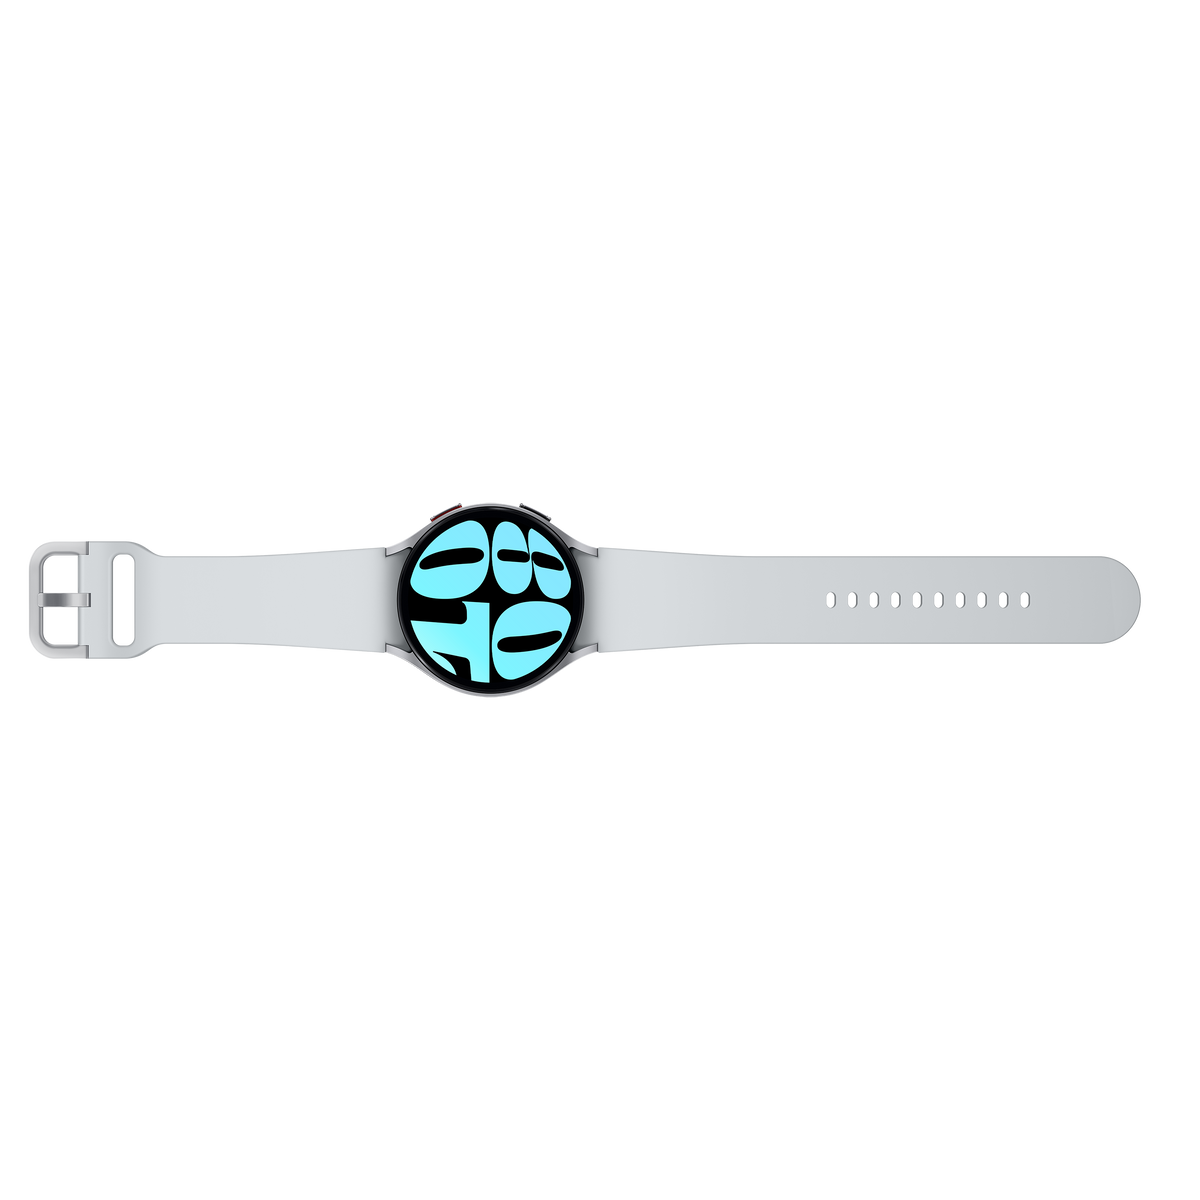 Samsung Galaxy Watch6 44mm Bluetooth Smartwatch - Silver | SM-R940NZSAEUA from Samsung - DID Electrical